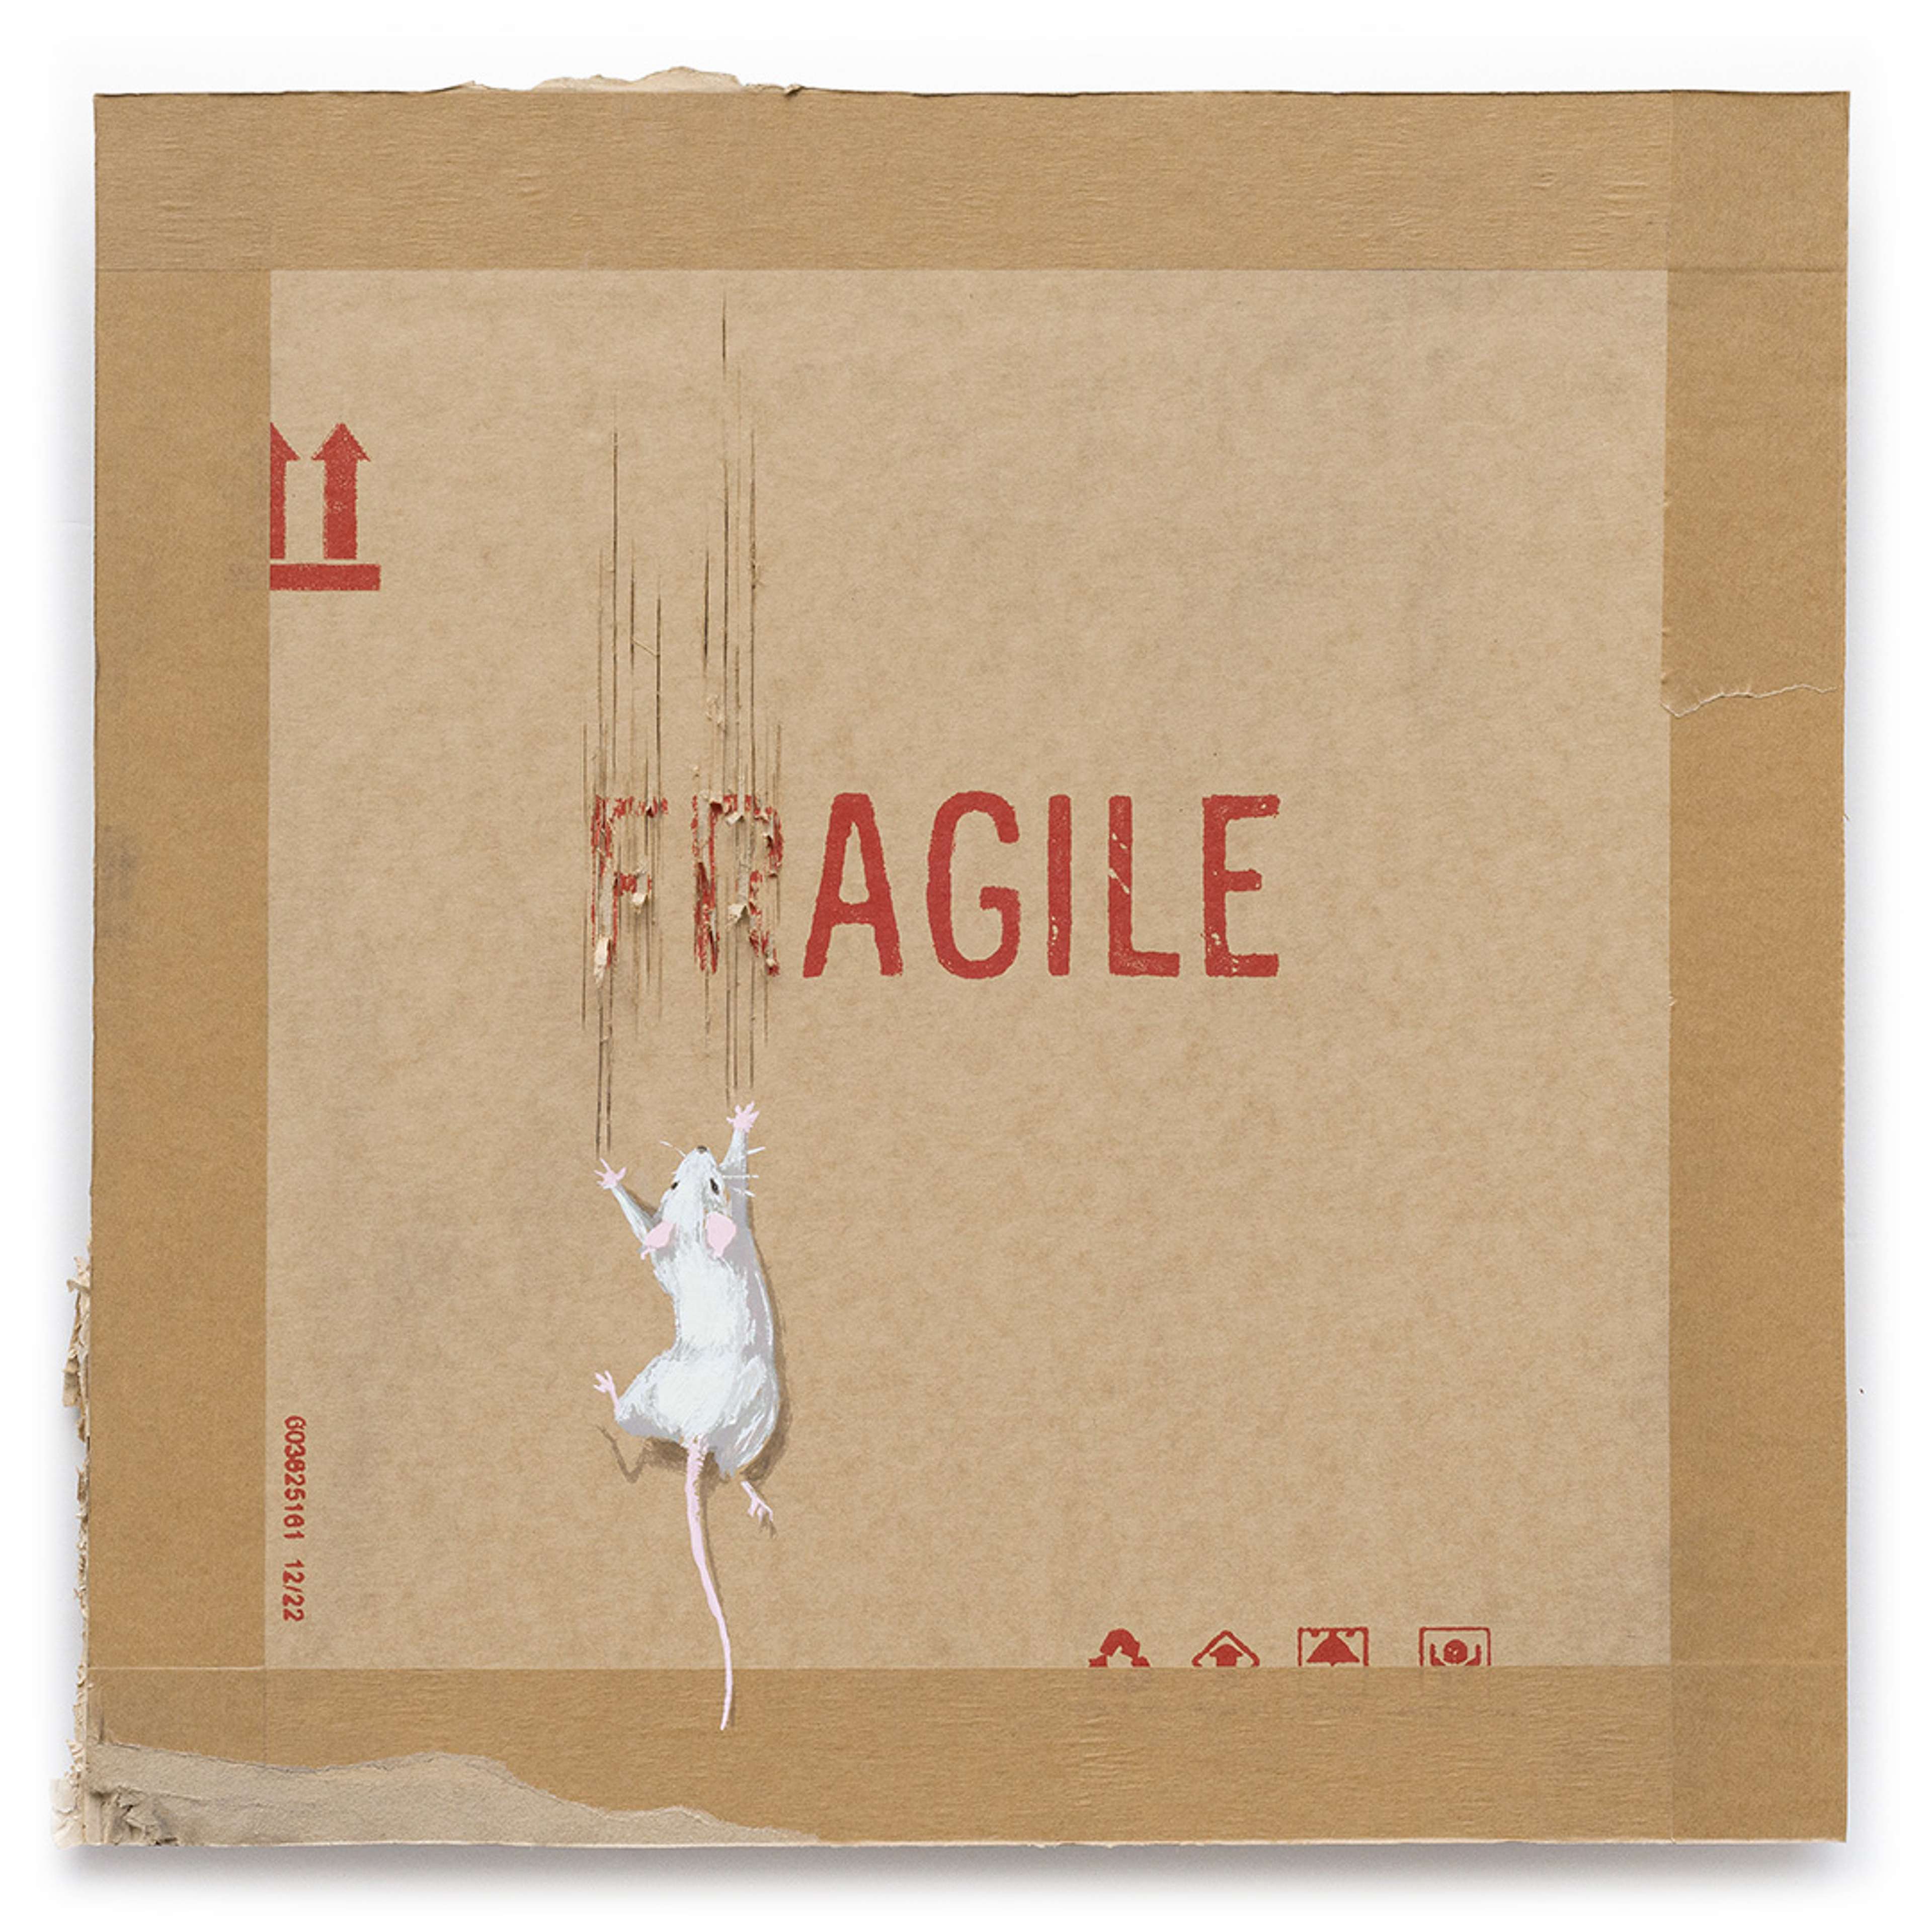 Fragile by Banksy - MyArtBroker